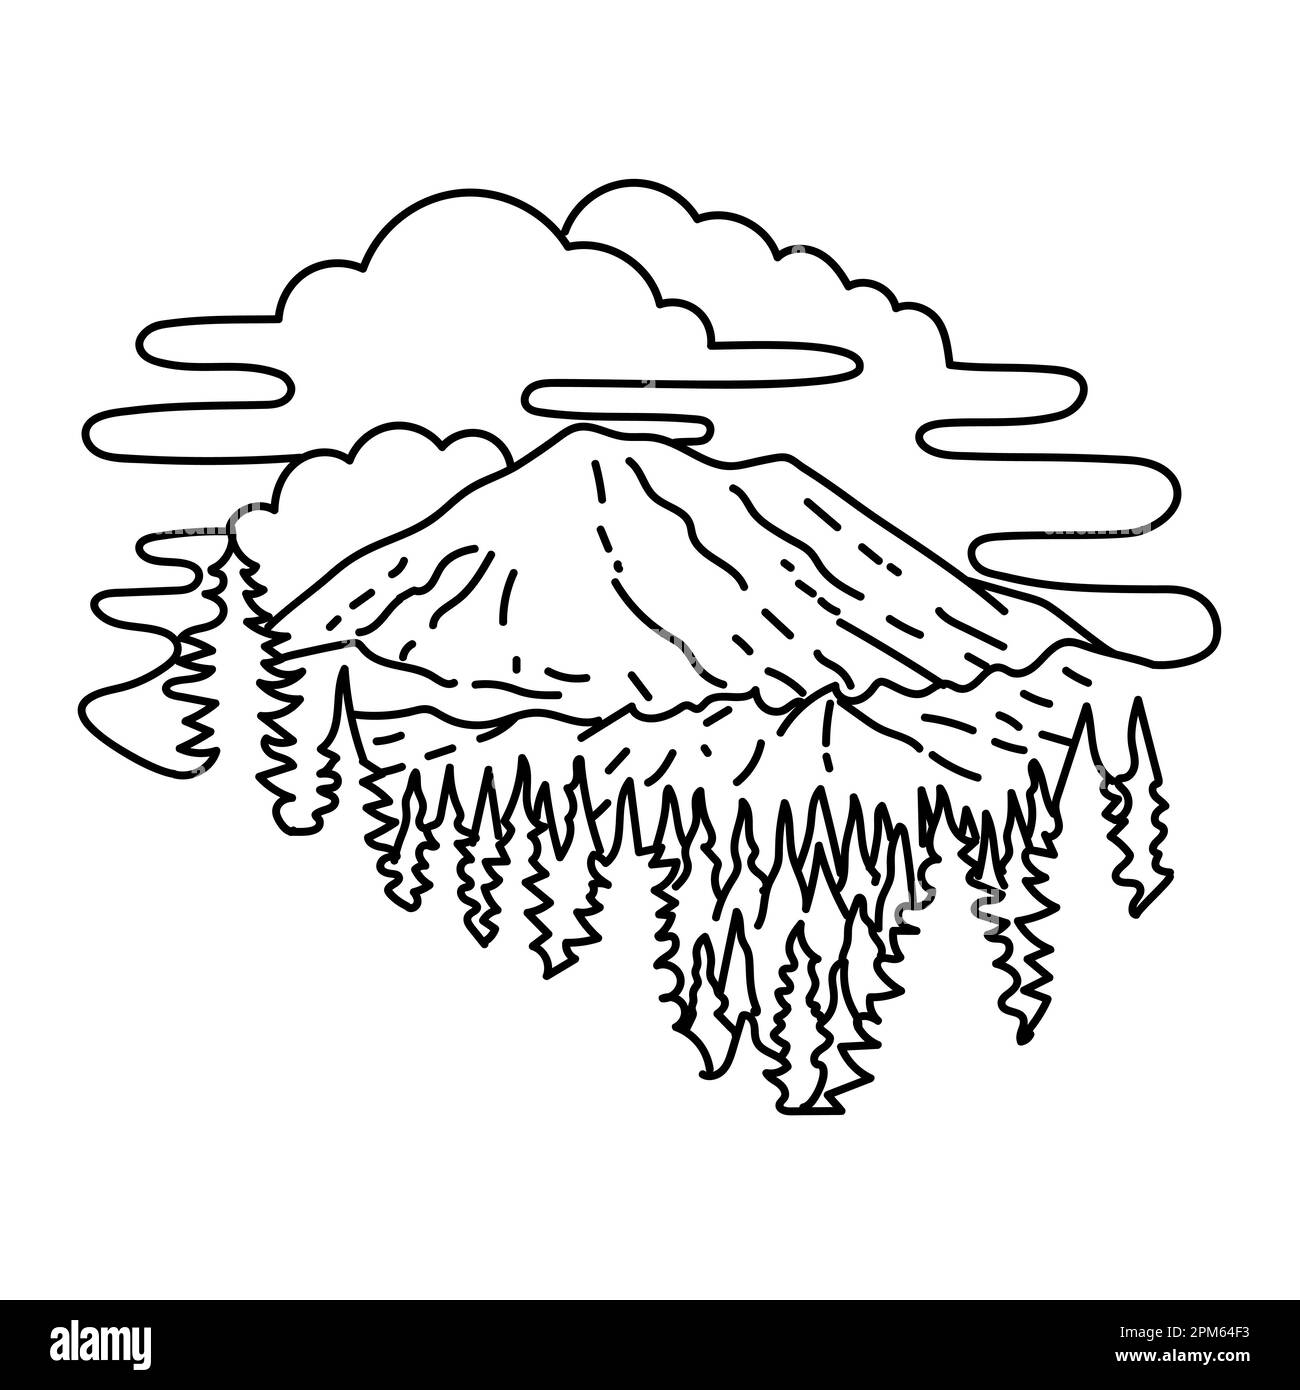 Illustrazione in monocromia del Mount Rainier National Park nel sud-est di Seattle, Washington state, Stati Uniti fatta in monocromia bianca e nera Foto Stock